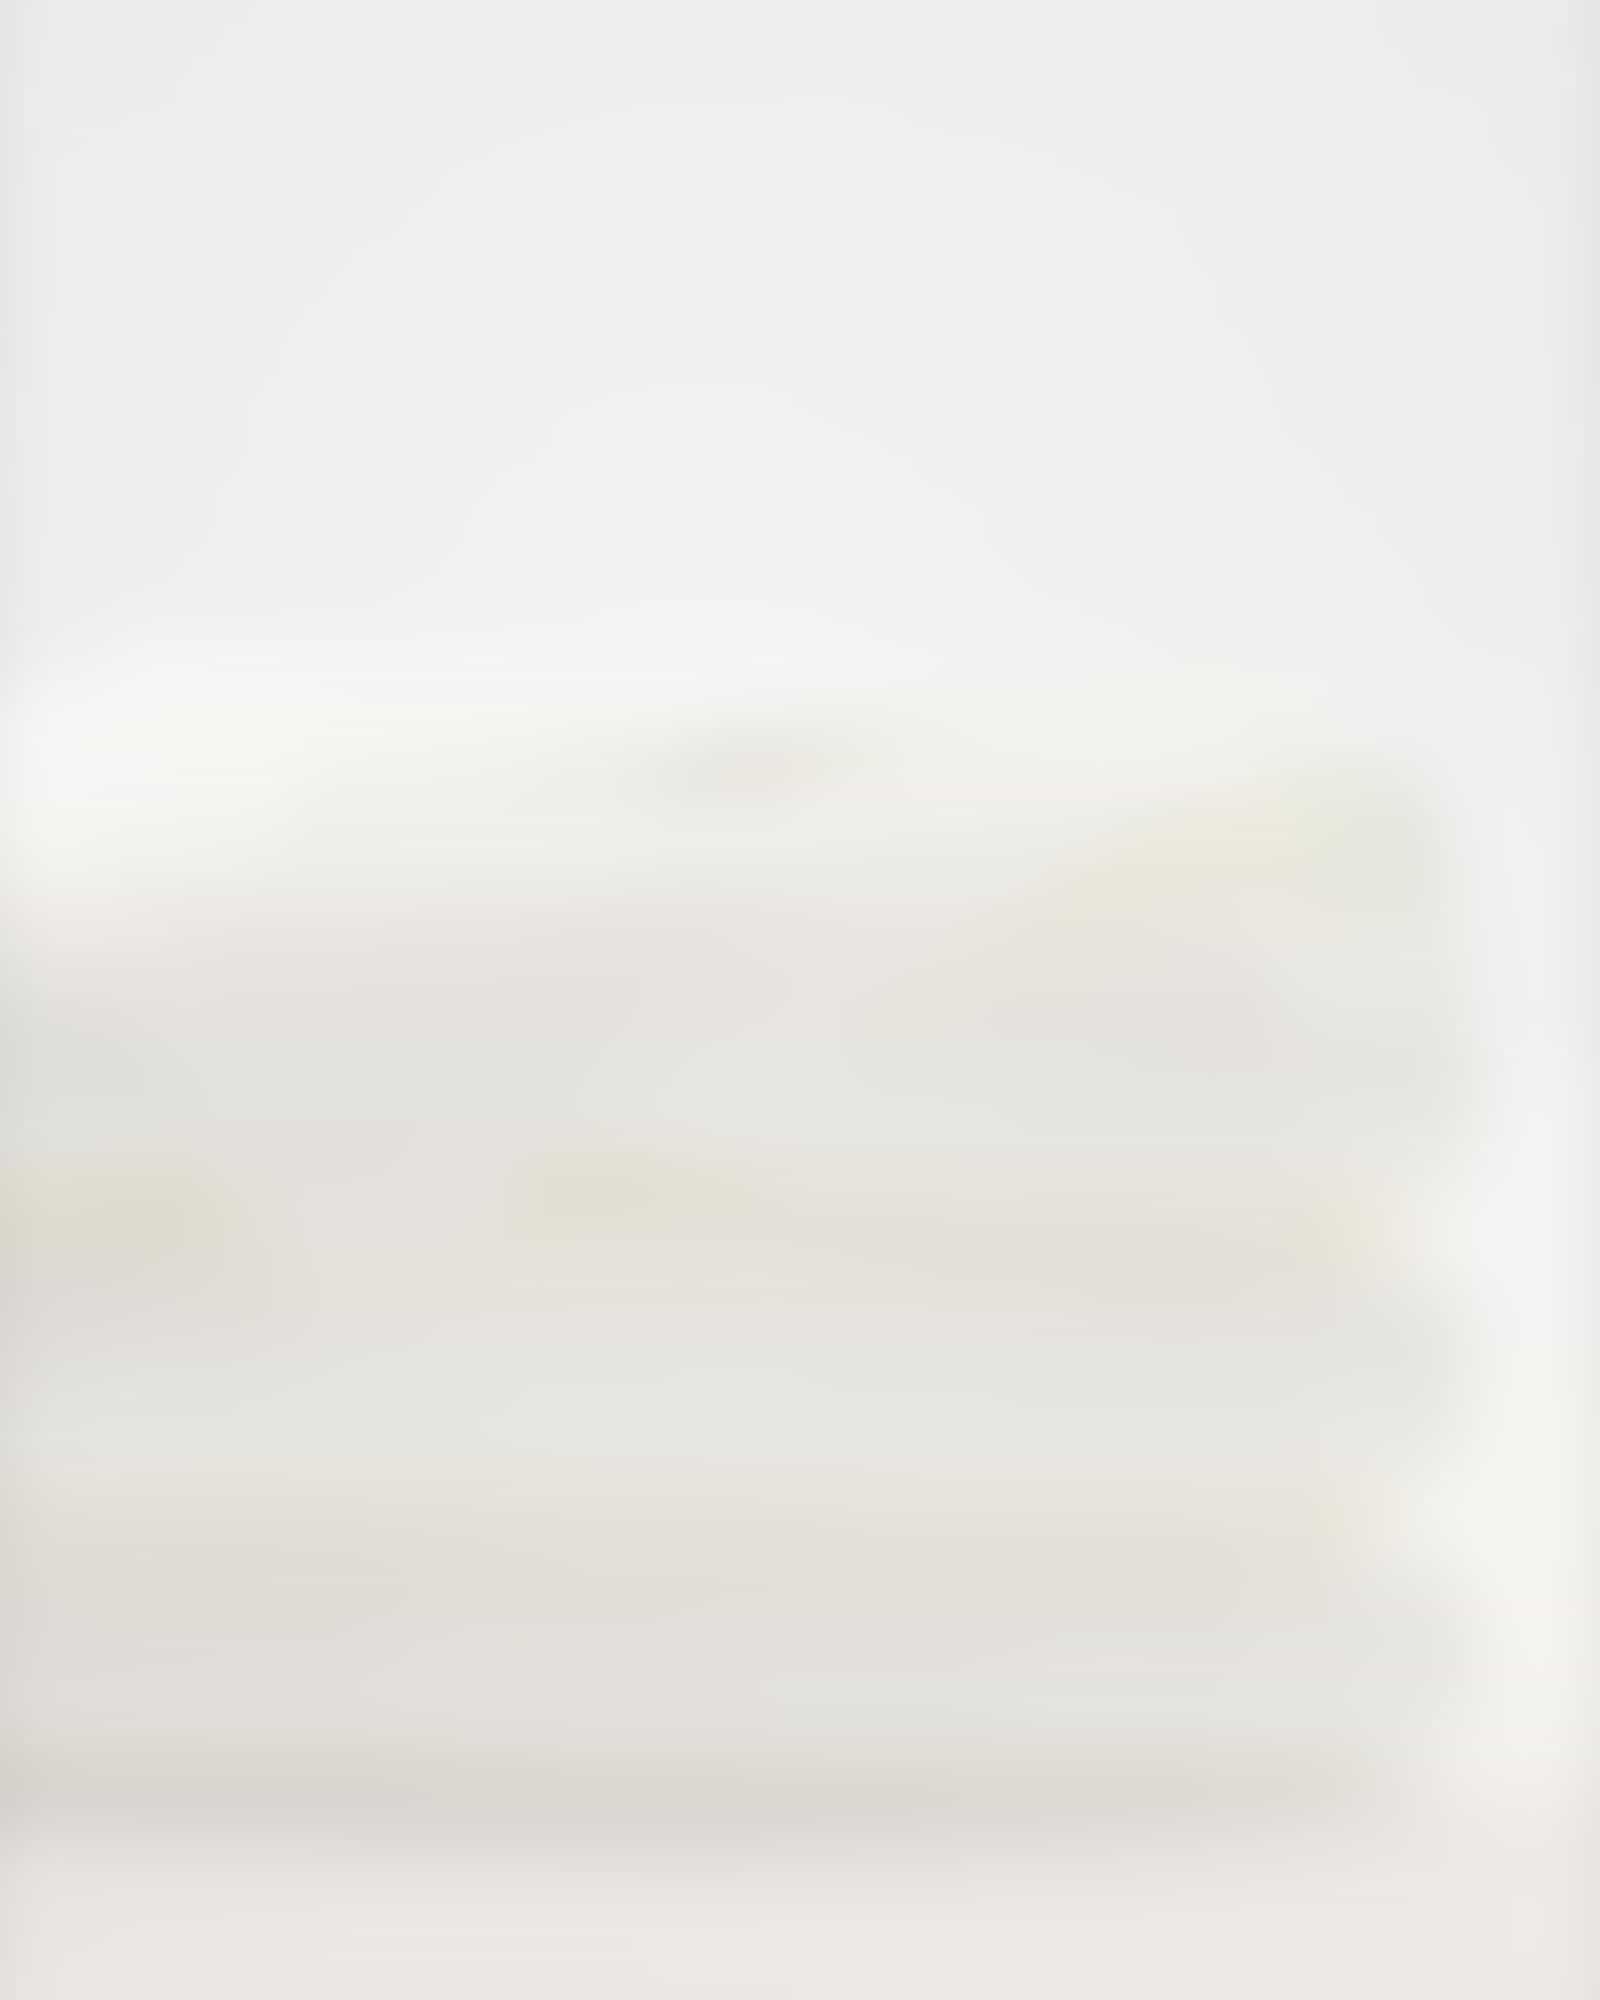 Möve - Superwuschel - Farbe: snow - 001 (0-1725/8775) - Duschtuch 80x150 cm